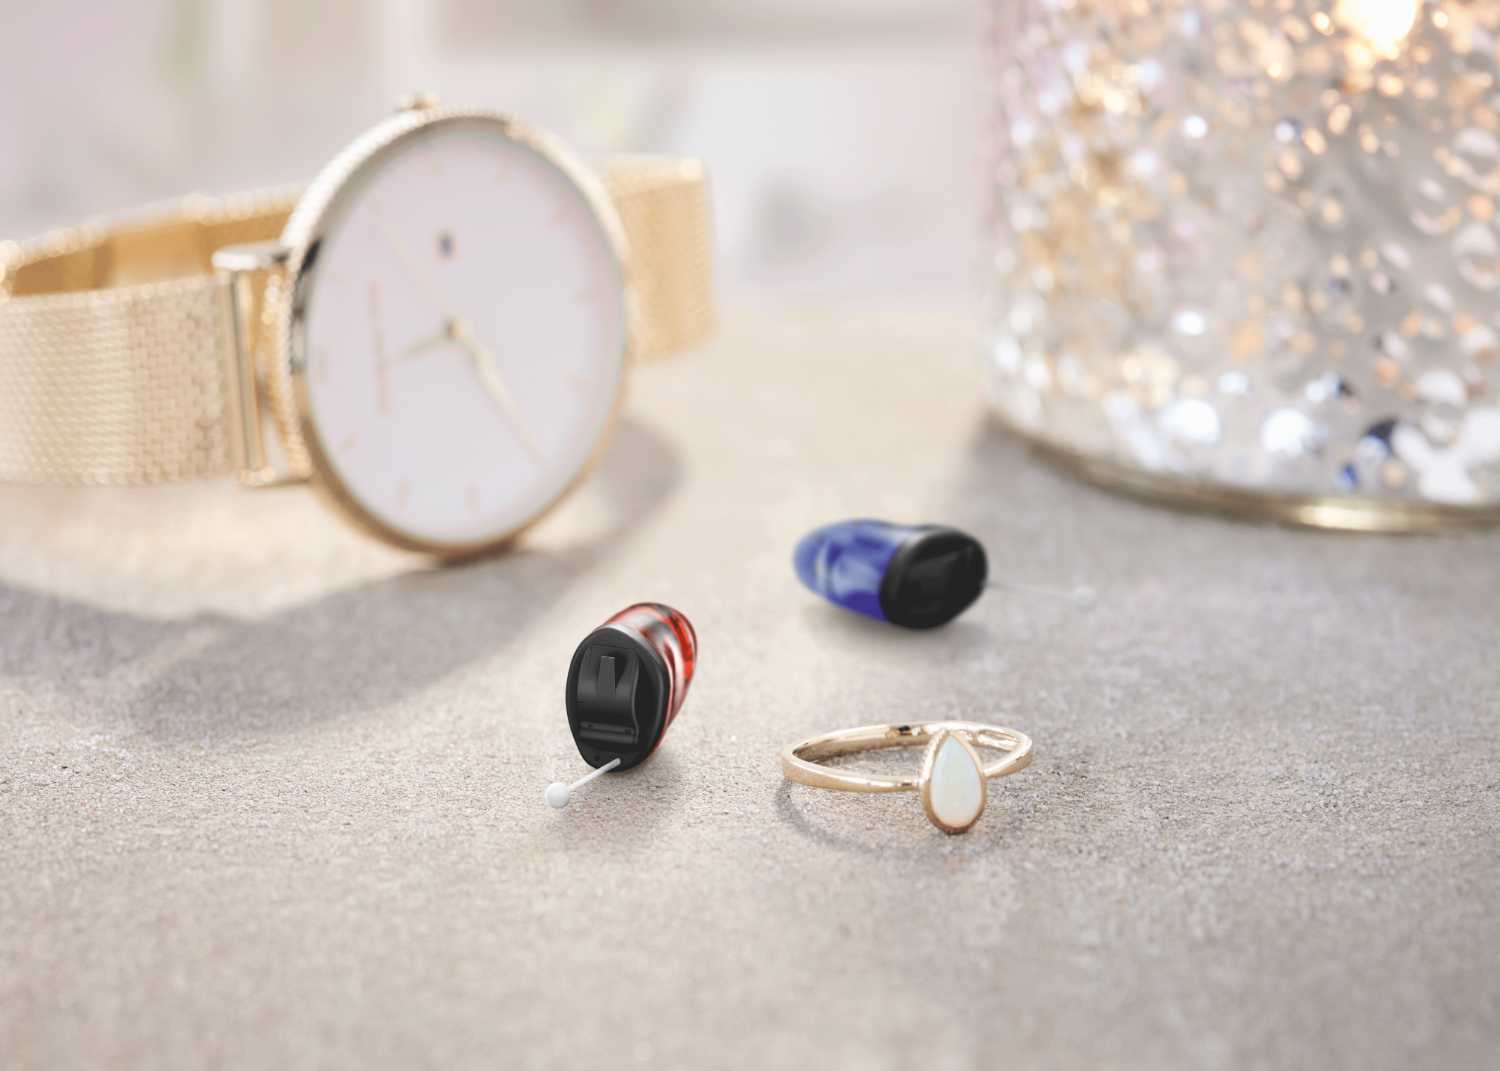 blaues und rotes Hörgerät neben einem Ring und einer eleganten Uhr